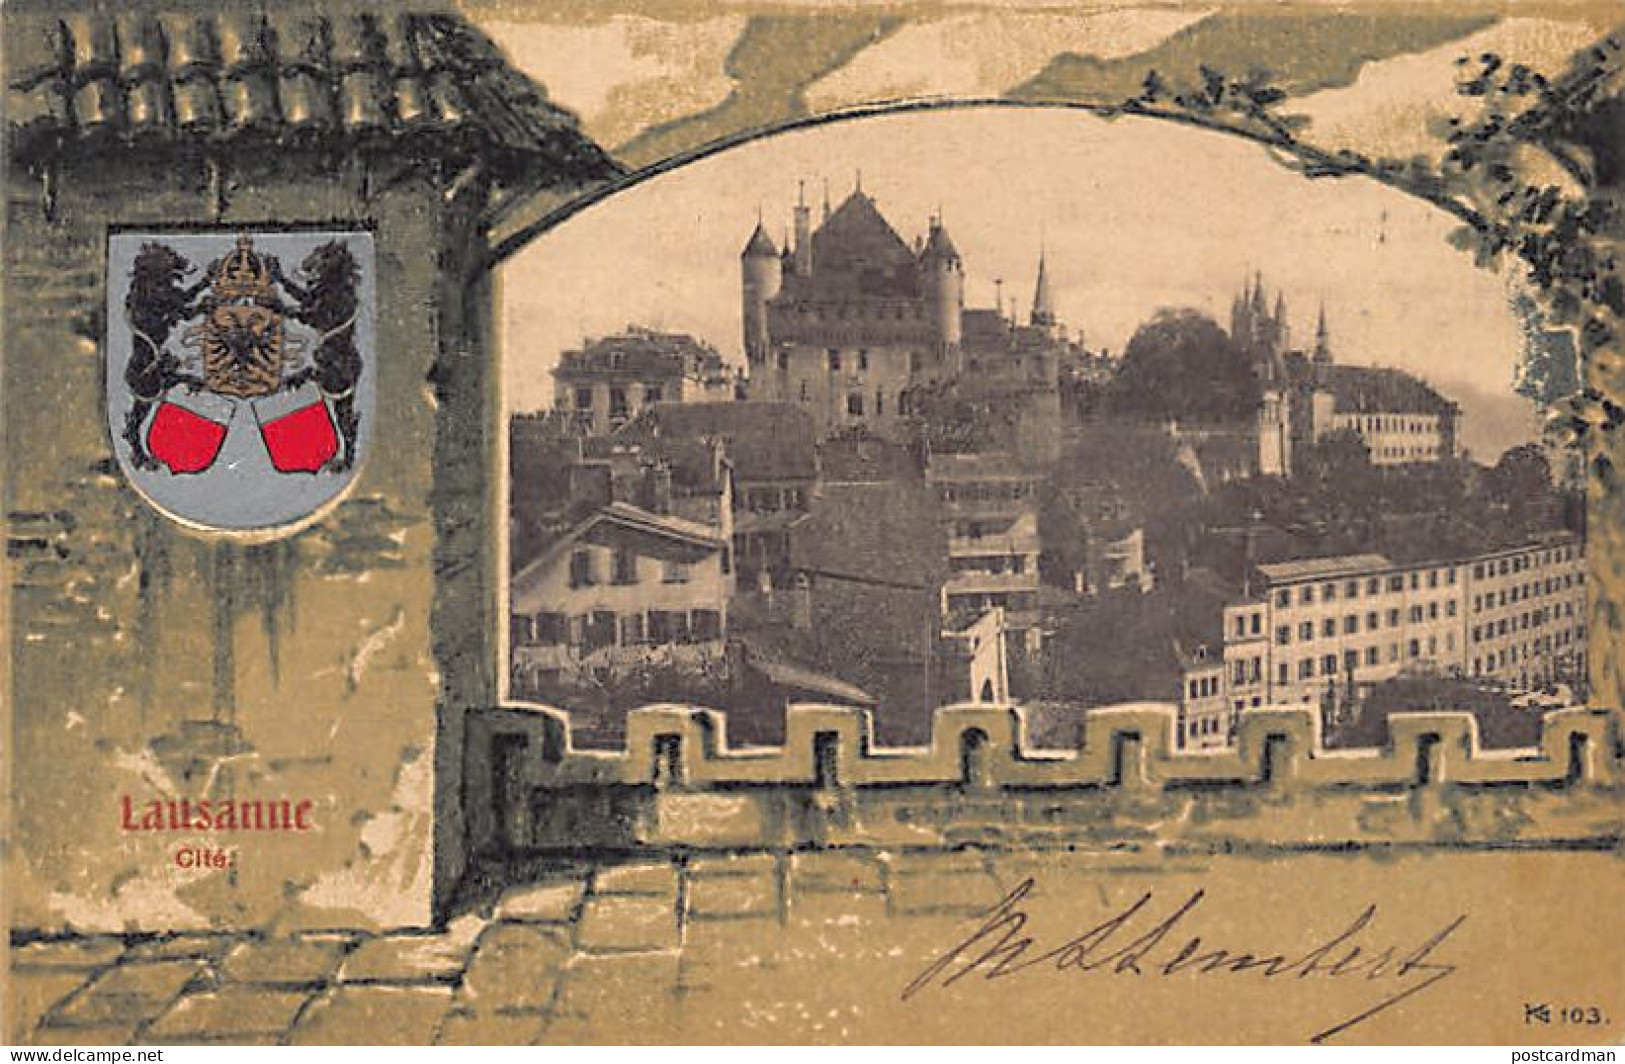 LAUSANNE (VD) Cité - Décor Knackstedt & Näther 103 - Ed. Corbaz & Co.  - Lausanne